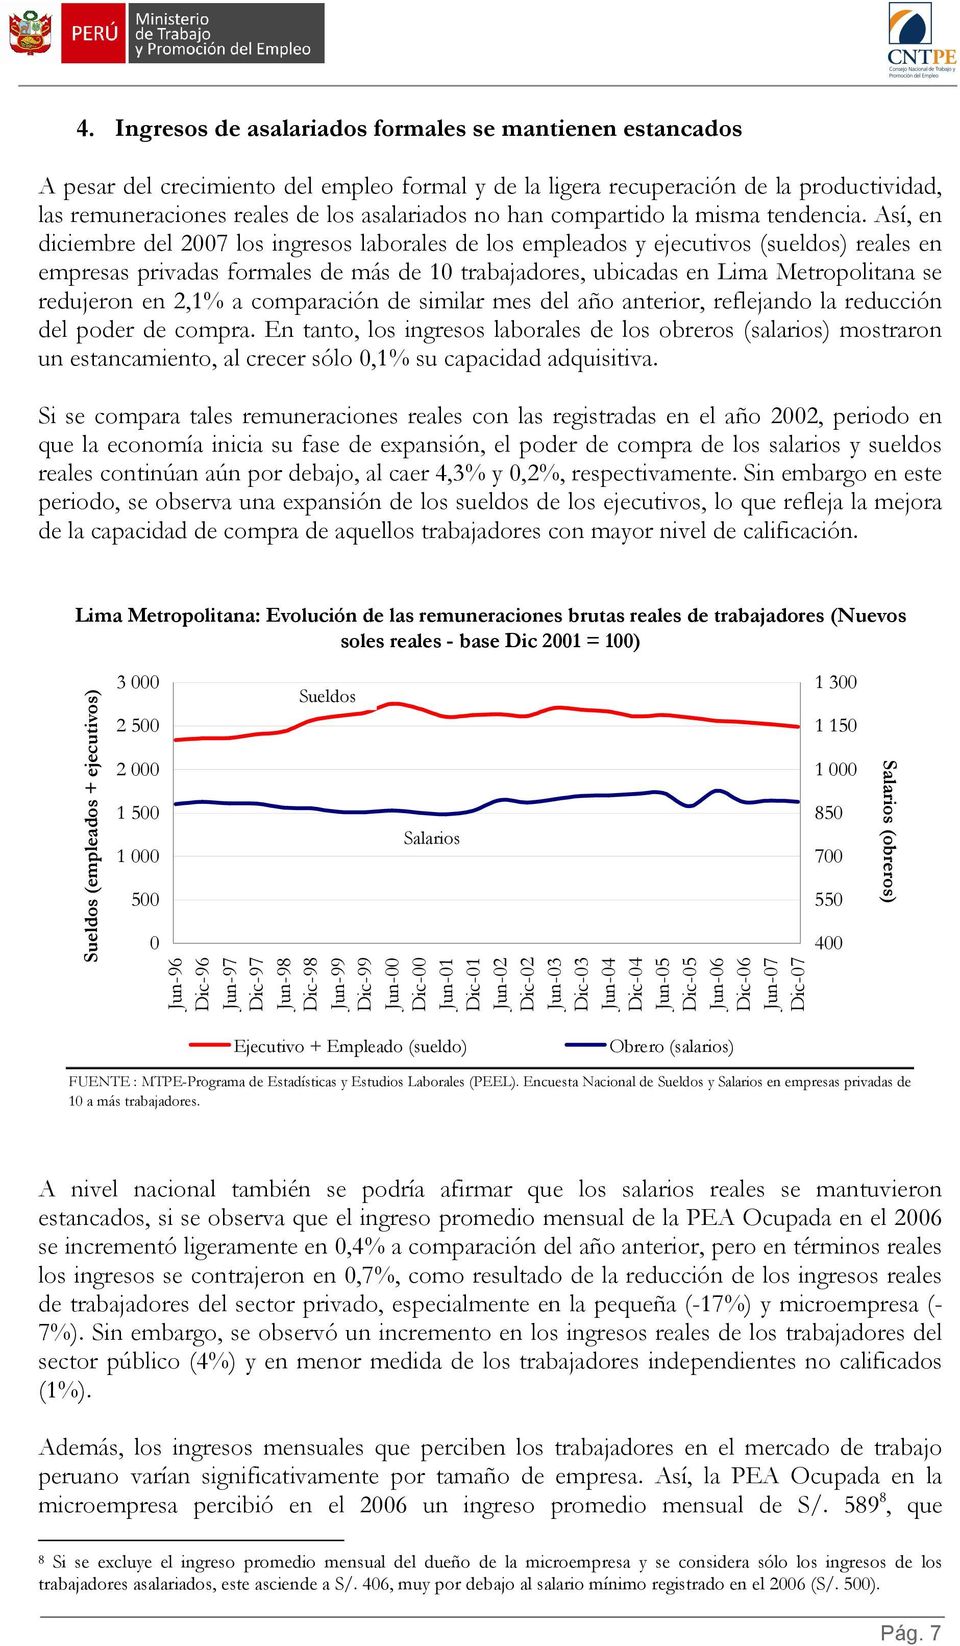 Así, en diciembre del 2007 los ingresos laborales de los empleados y ejecutivos (sueldos) reales en empresas privadas formales de más de 10 trabajadores, ubicadas en Lima Metropolitana se redujeron